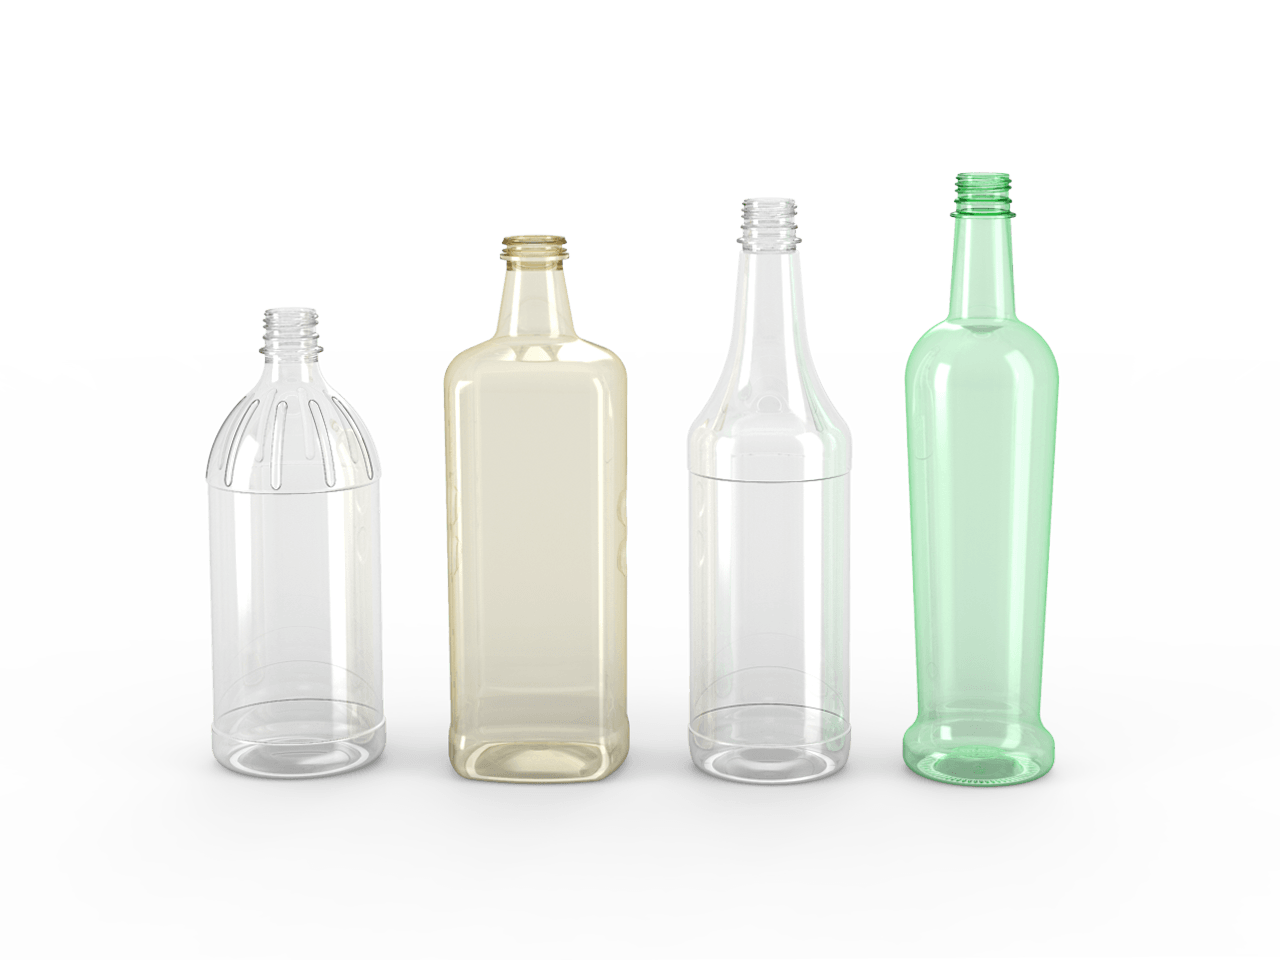 Four plastic bottles different colors